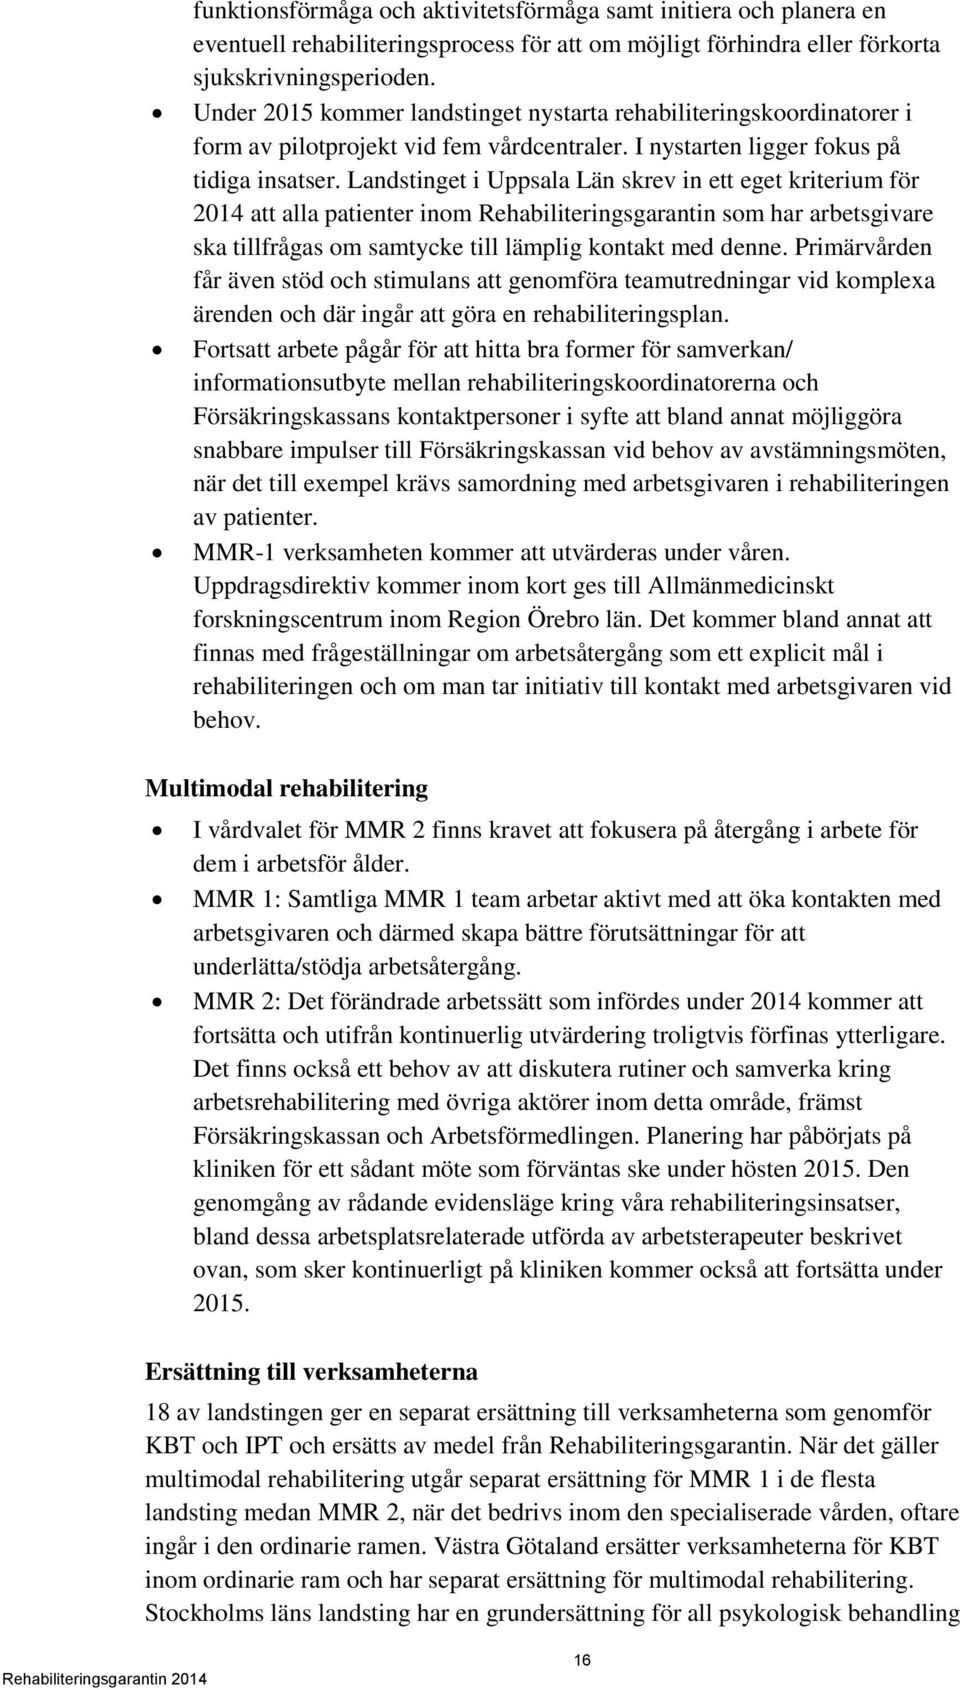 Landstinget i Uppsala Län skrev in ett eget kriterium för 2014 att alla patienter inom Rehabiliteringsgarantin som har arbetsgivare ska tillfrågas om samtycke till lämplig kontakt med denne.